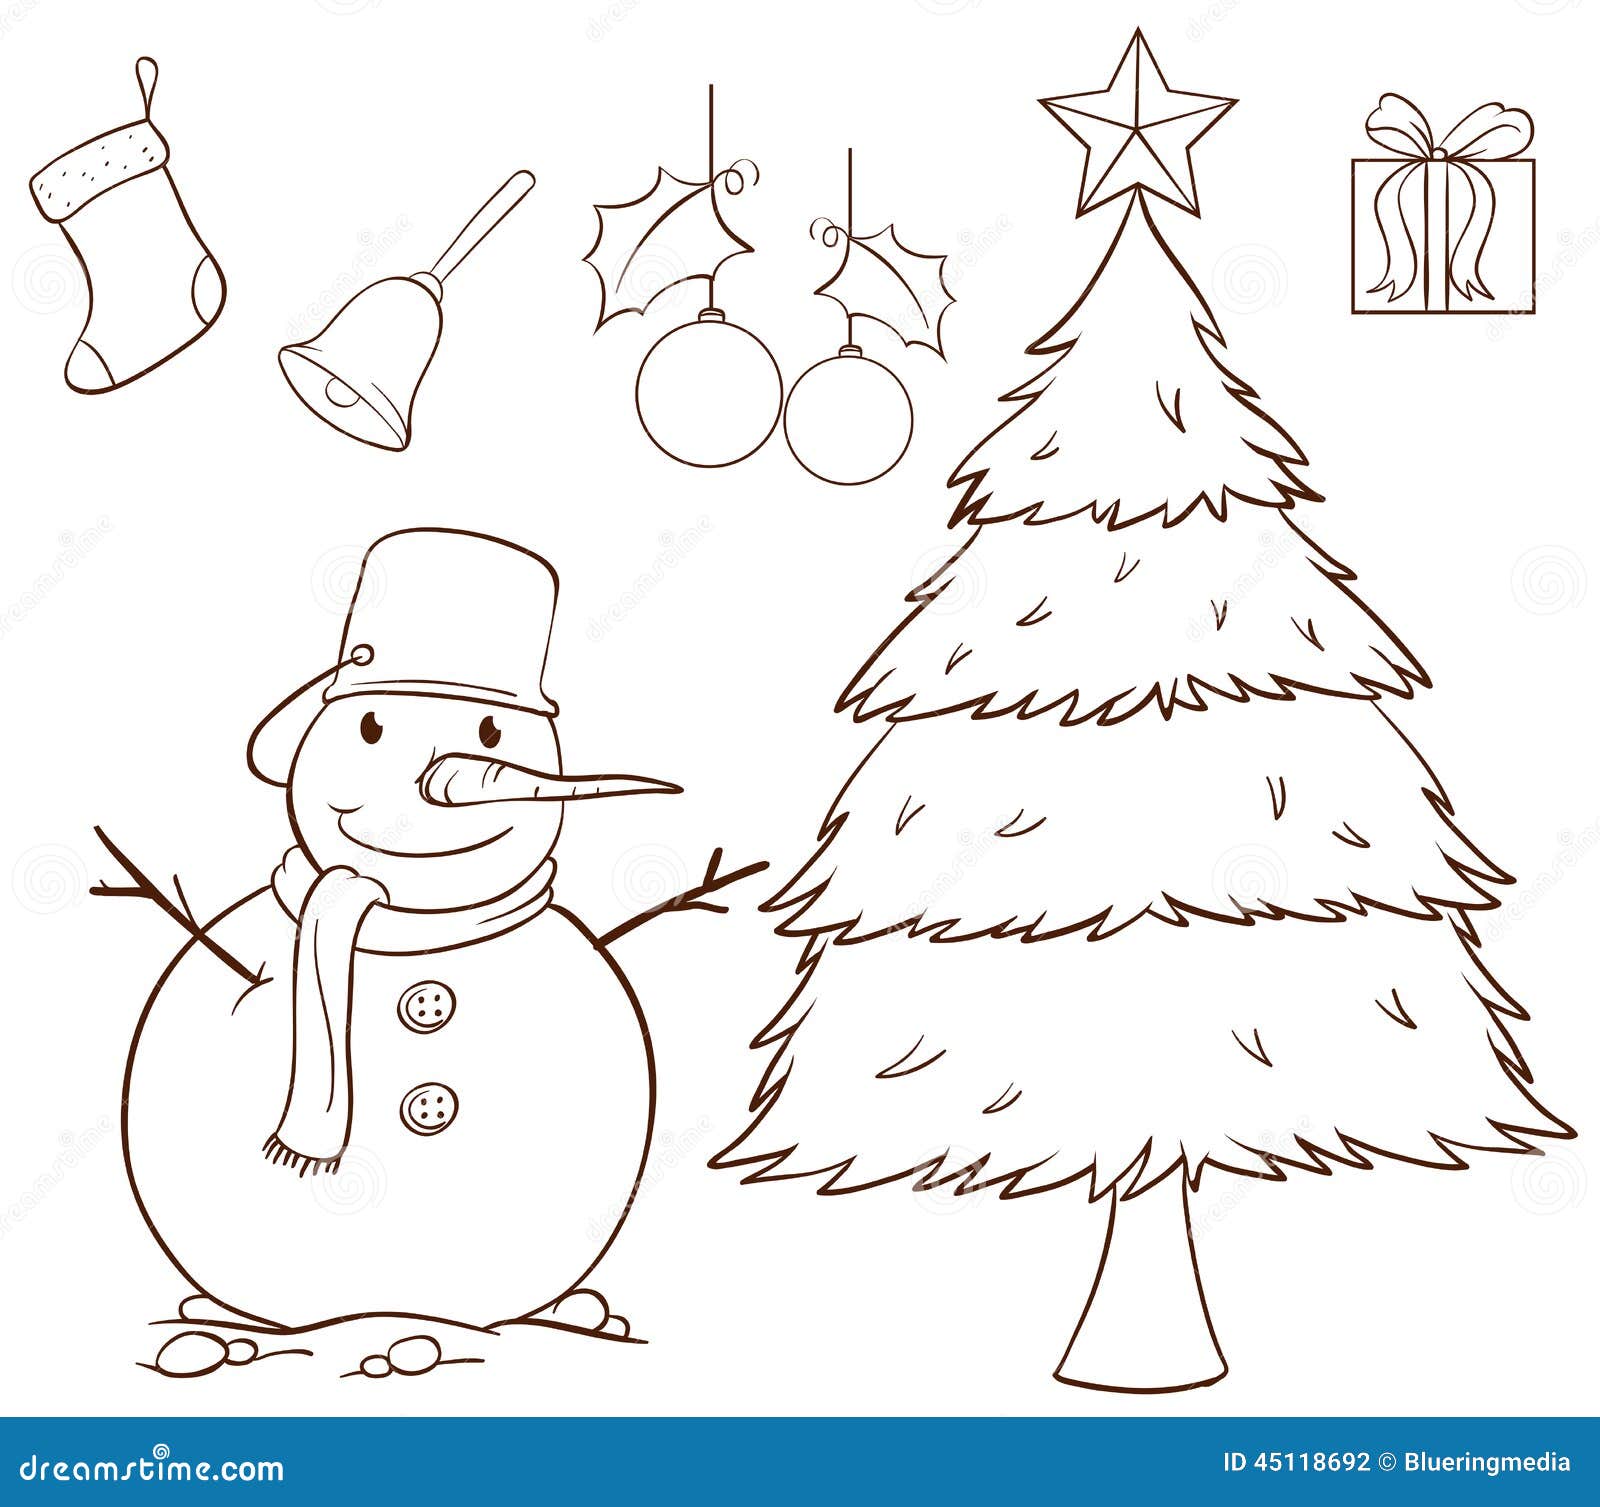 圣诞节贺卡怎么做简单又漂亮？圣诞树元素贺卡制作过程_凤凰网视频_凤凰网